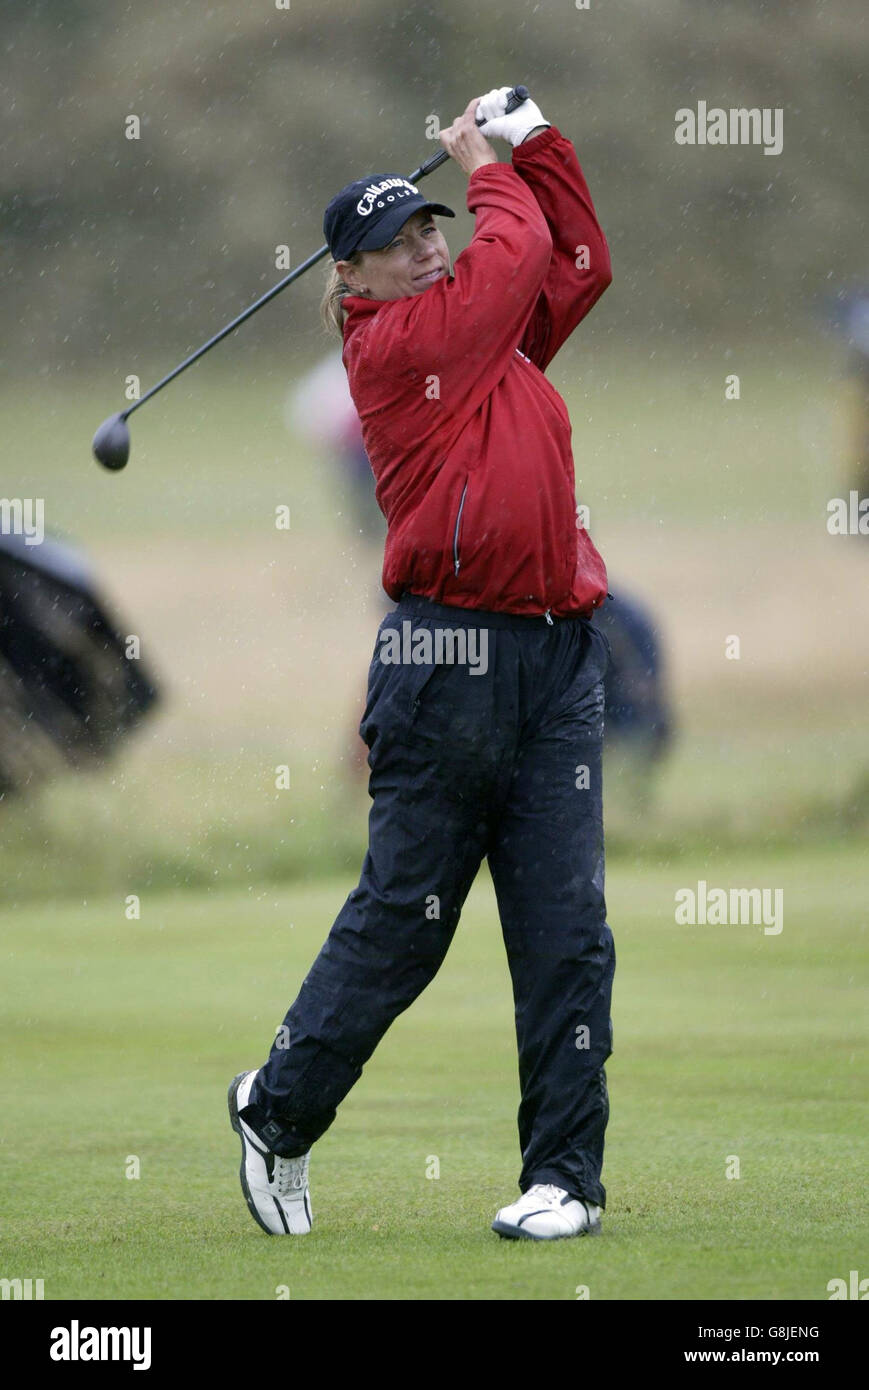 Golf - Women's British Open 2005 - Royal Birkdale. L'Annika Sorenstam de Suède en action sur le 9e tee. Banque D'Images